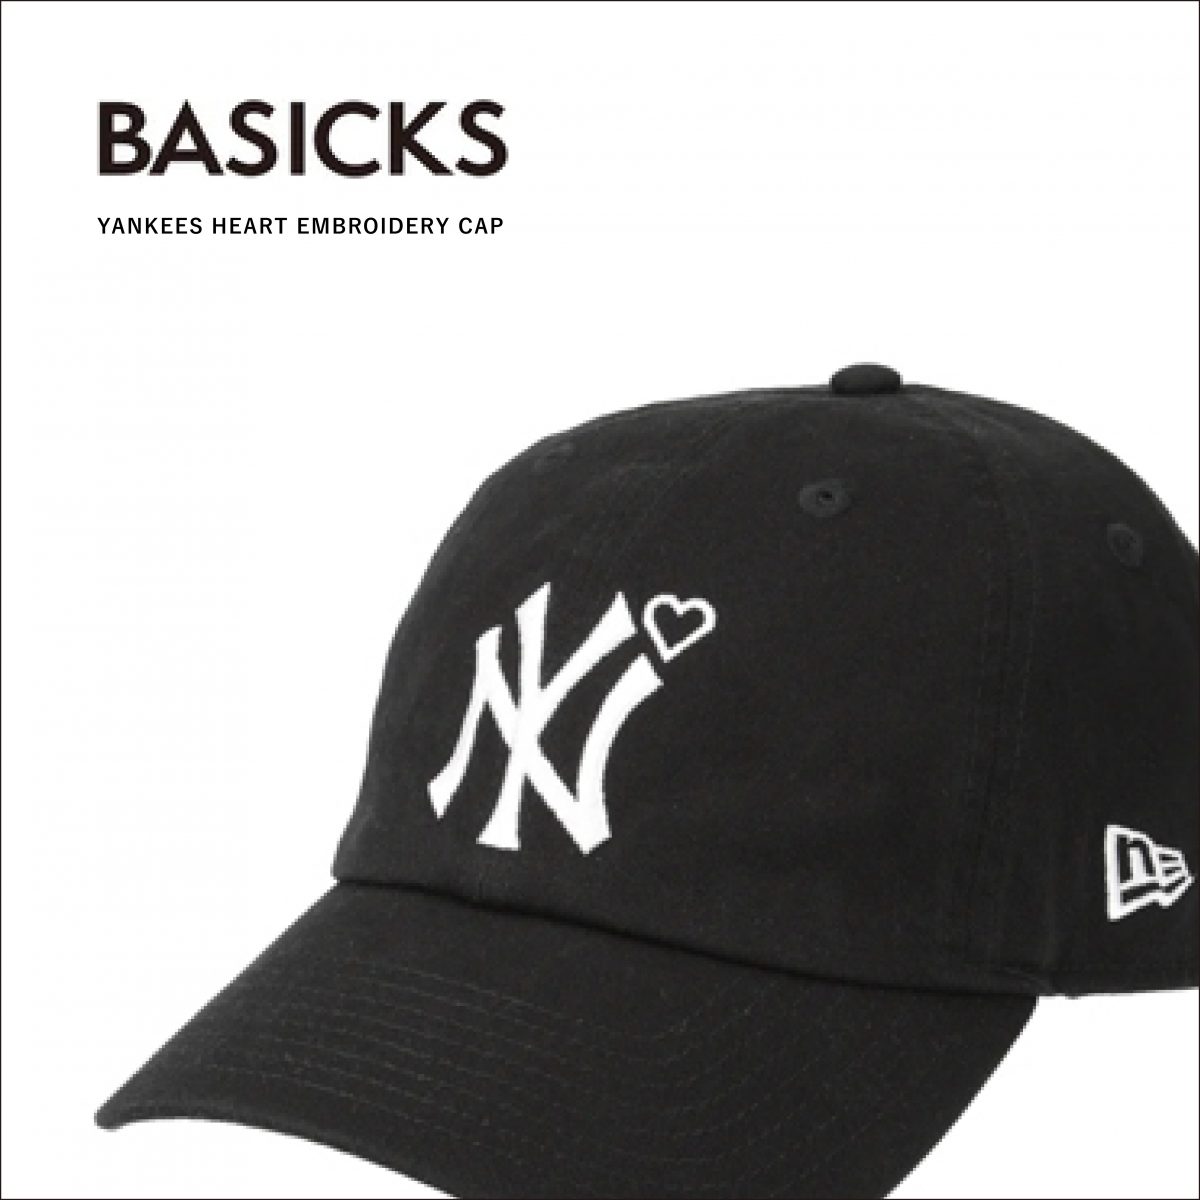 予約発売BASICKS ハートデザインヤンキースキャップ 帽子